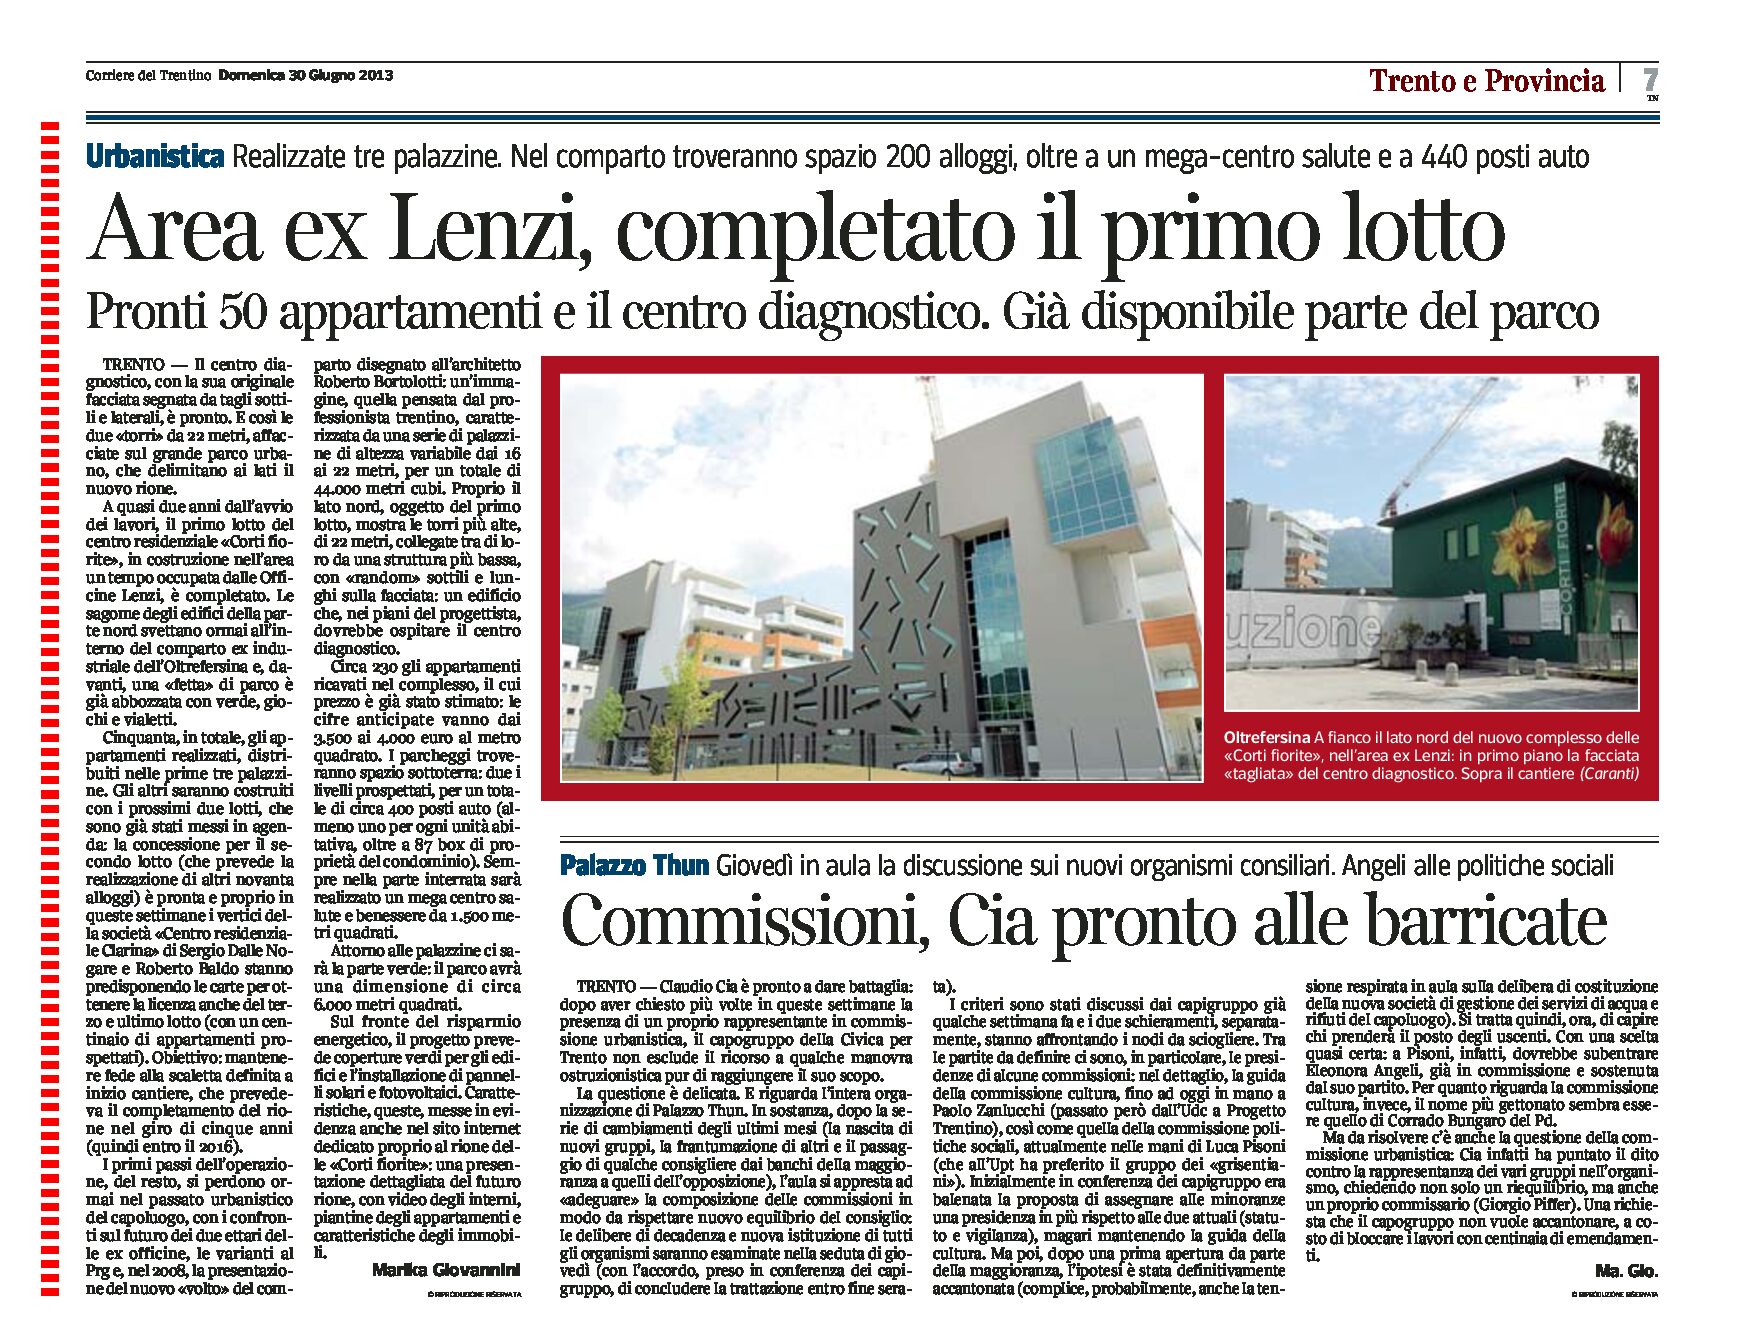 Completato il primo lotto dell’area ex Lenzi a Trento: il centro residenziale “Corti fiorite” e il centro diagnostico.